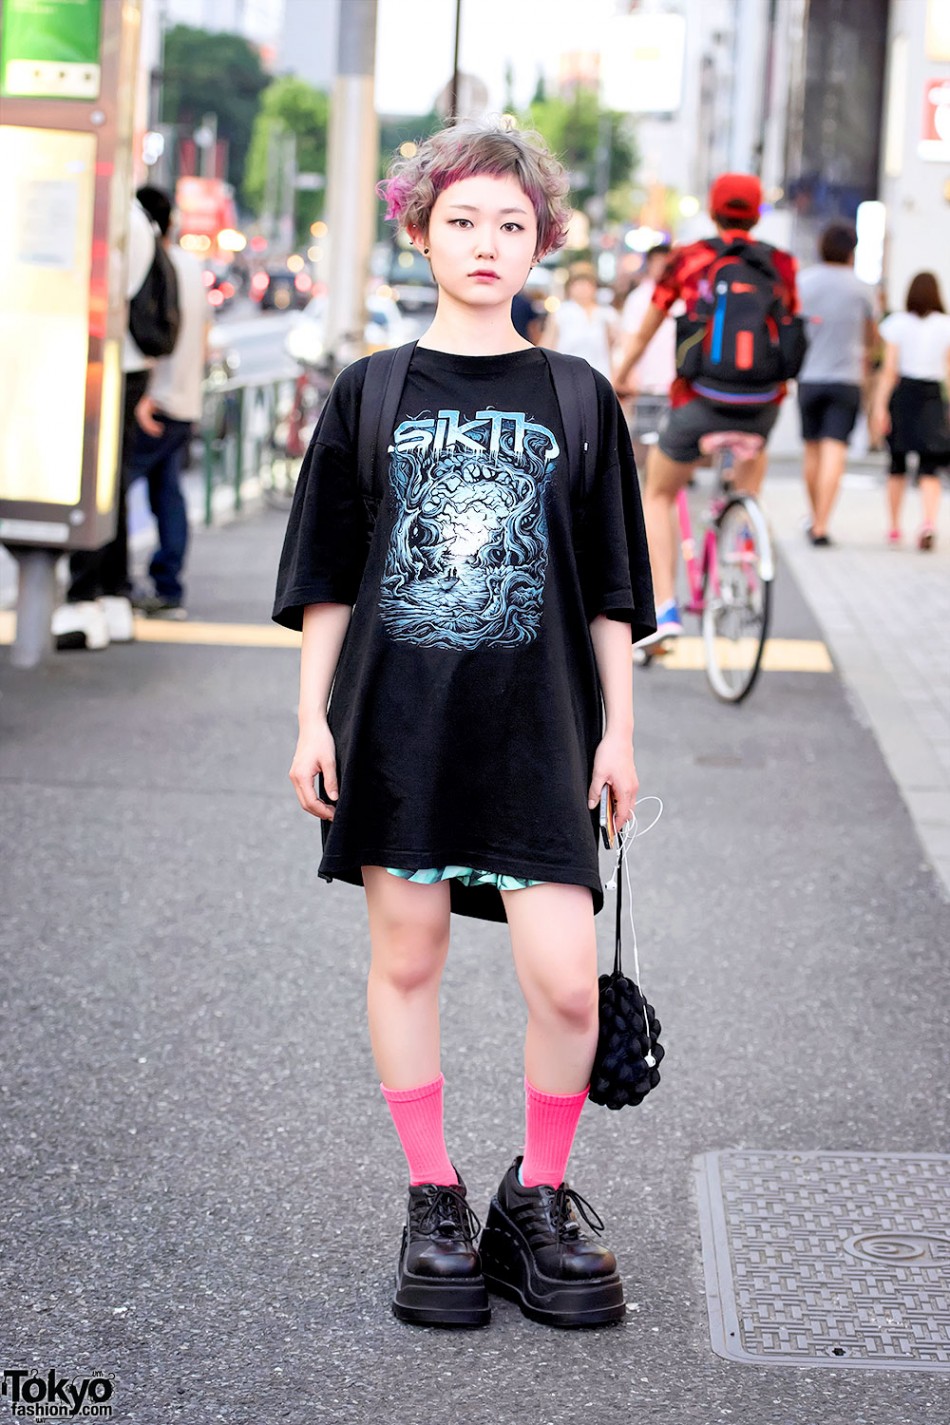 Harajuku Girl w/ Pink-Blonde Hair, Punk Cake Platforms, Sikth Tee ...